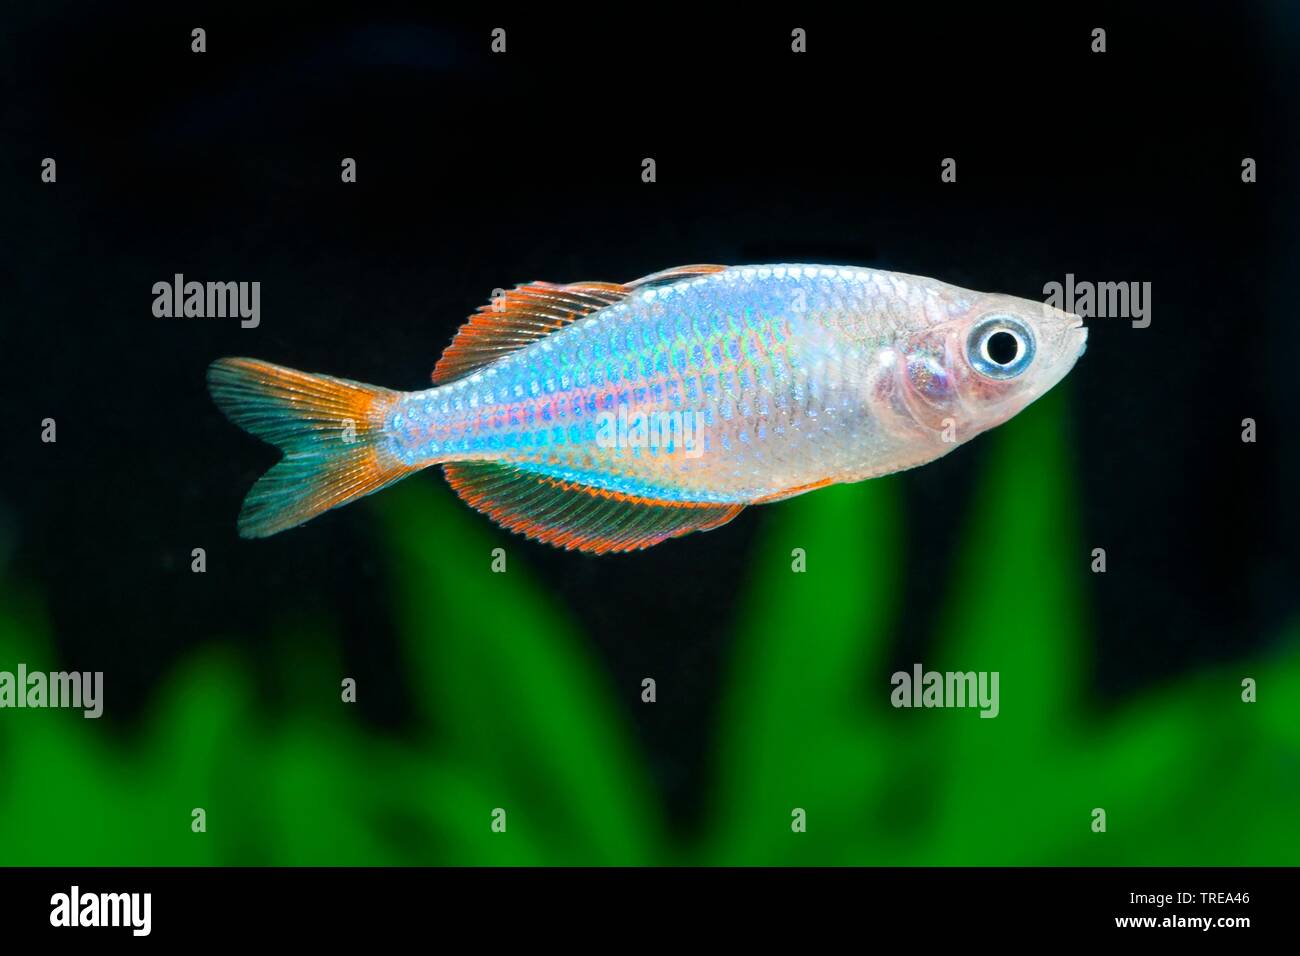 Dwarf rainbowfish, Neon rainbow (Melanotaenia praecox), swimming, side view Stock Photo